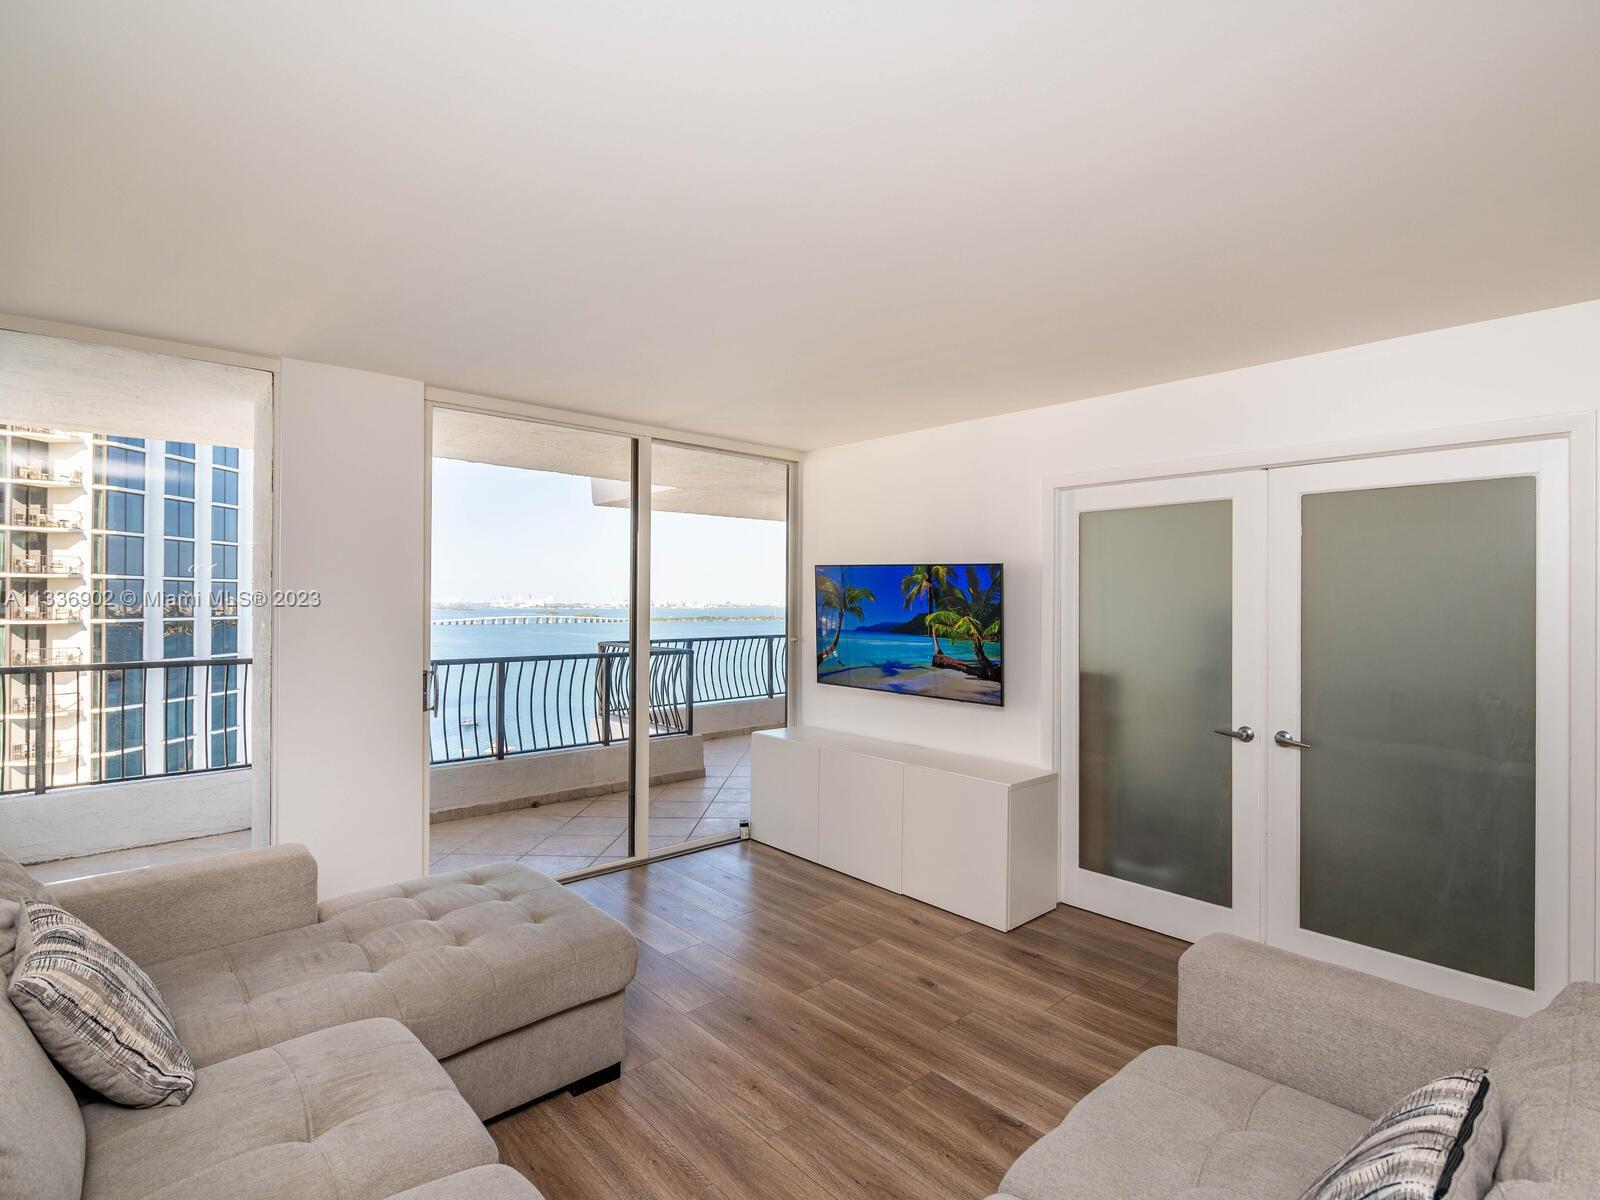 Wonderful unit at The Venetia Condominium, this unit has an impressive ocean view, it has 1 oversize